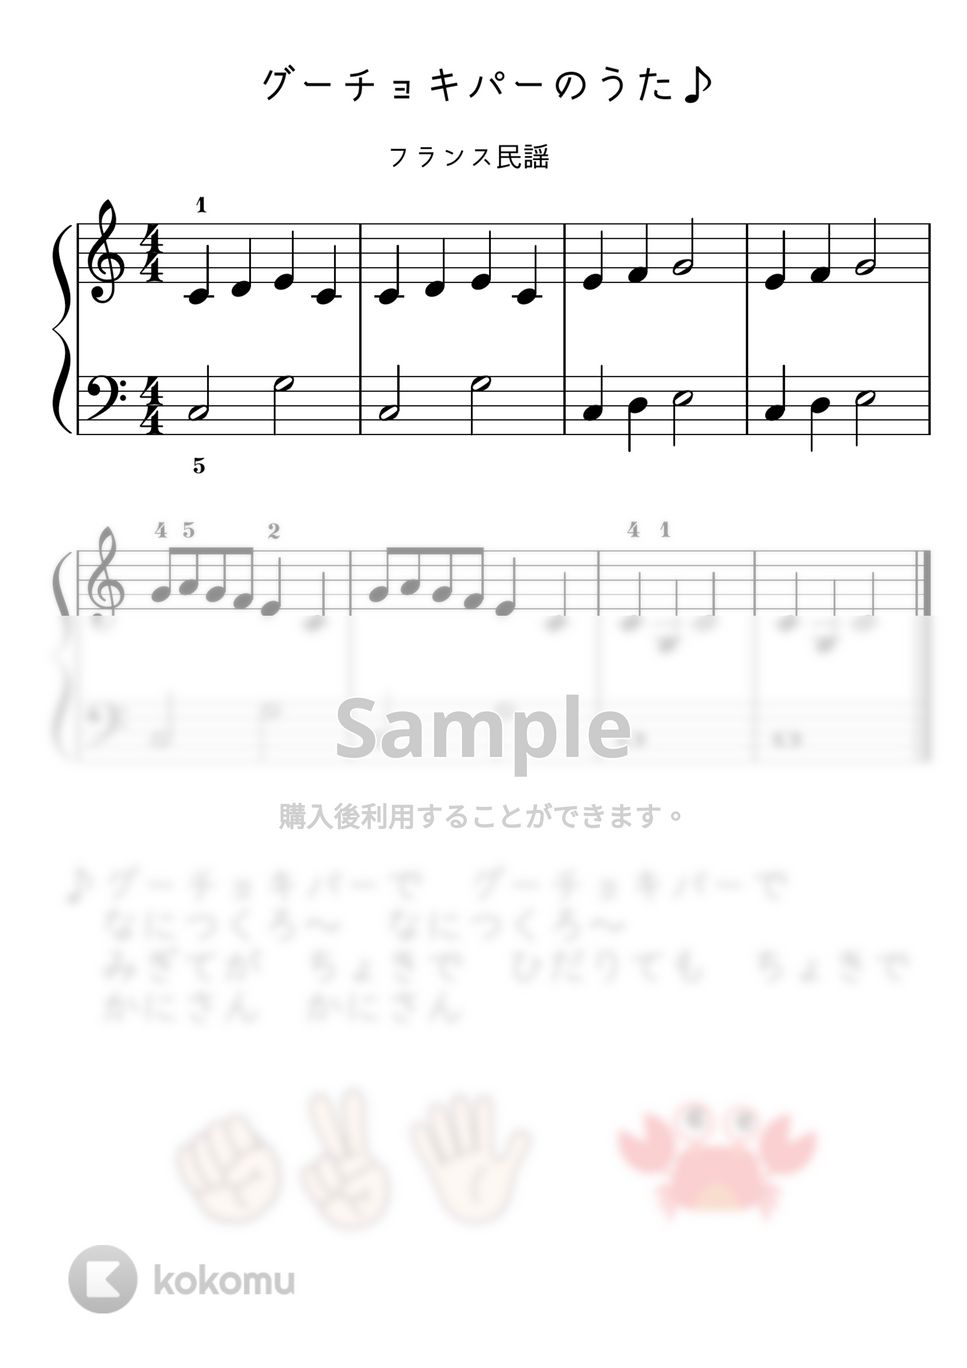 【初級】グーチョキパーのうた（フレール・ジャック） by ピアノのせんせいの楽譜集